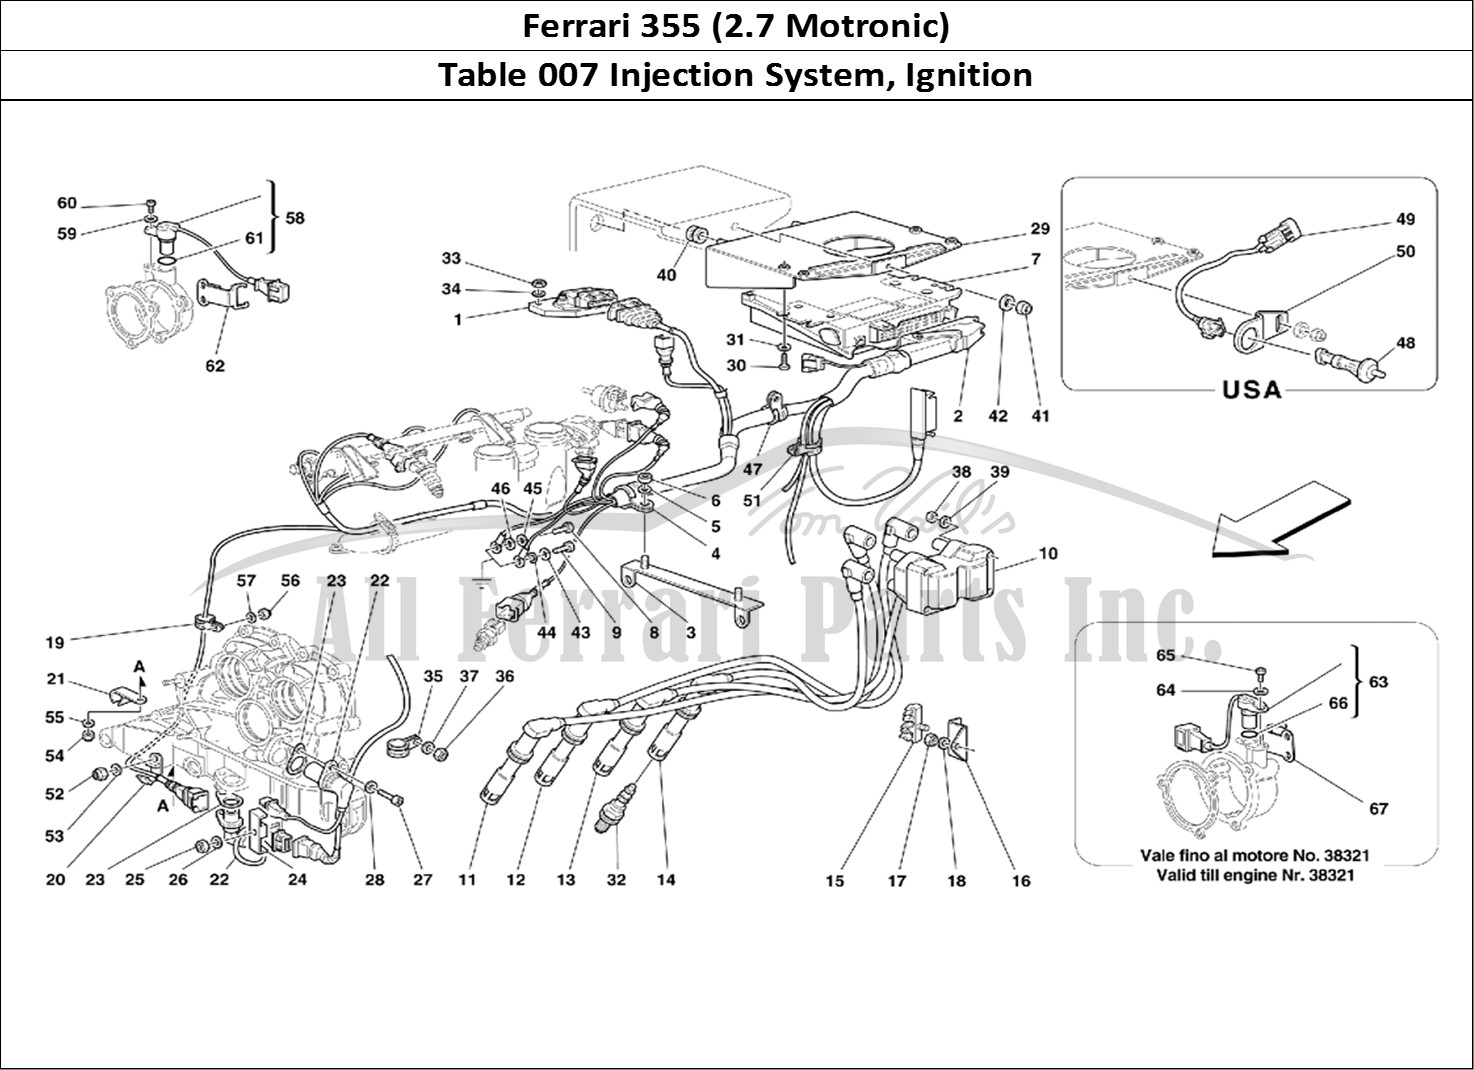 Ferrari Parts Ferrari 355 (2.7 Motronic) Page 007 Injection Device - Igniti